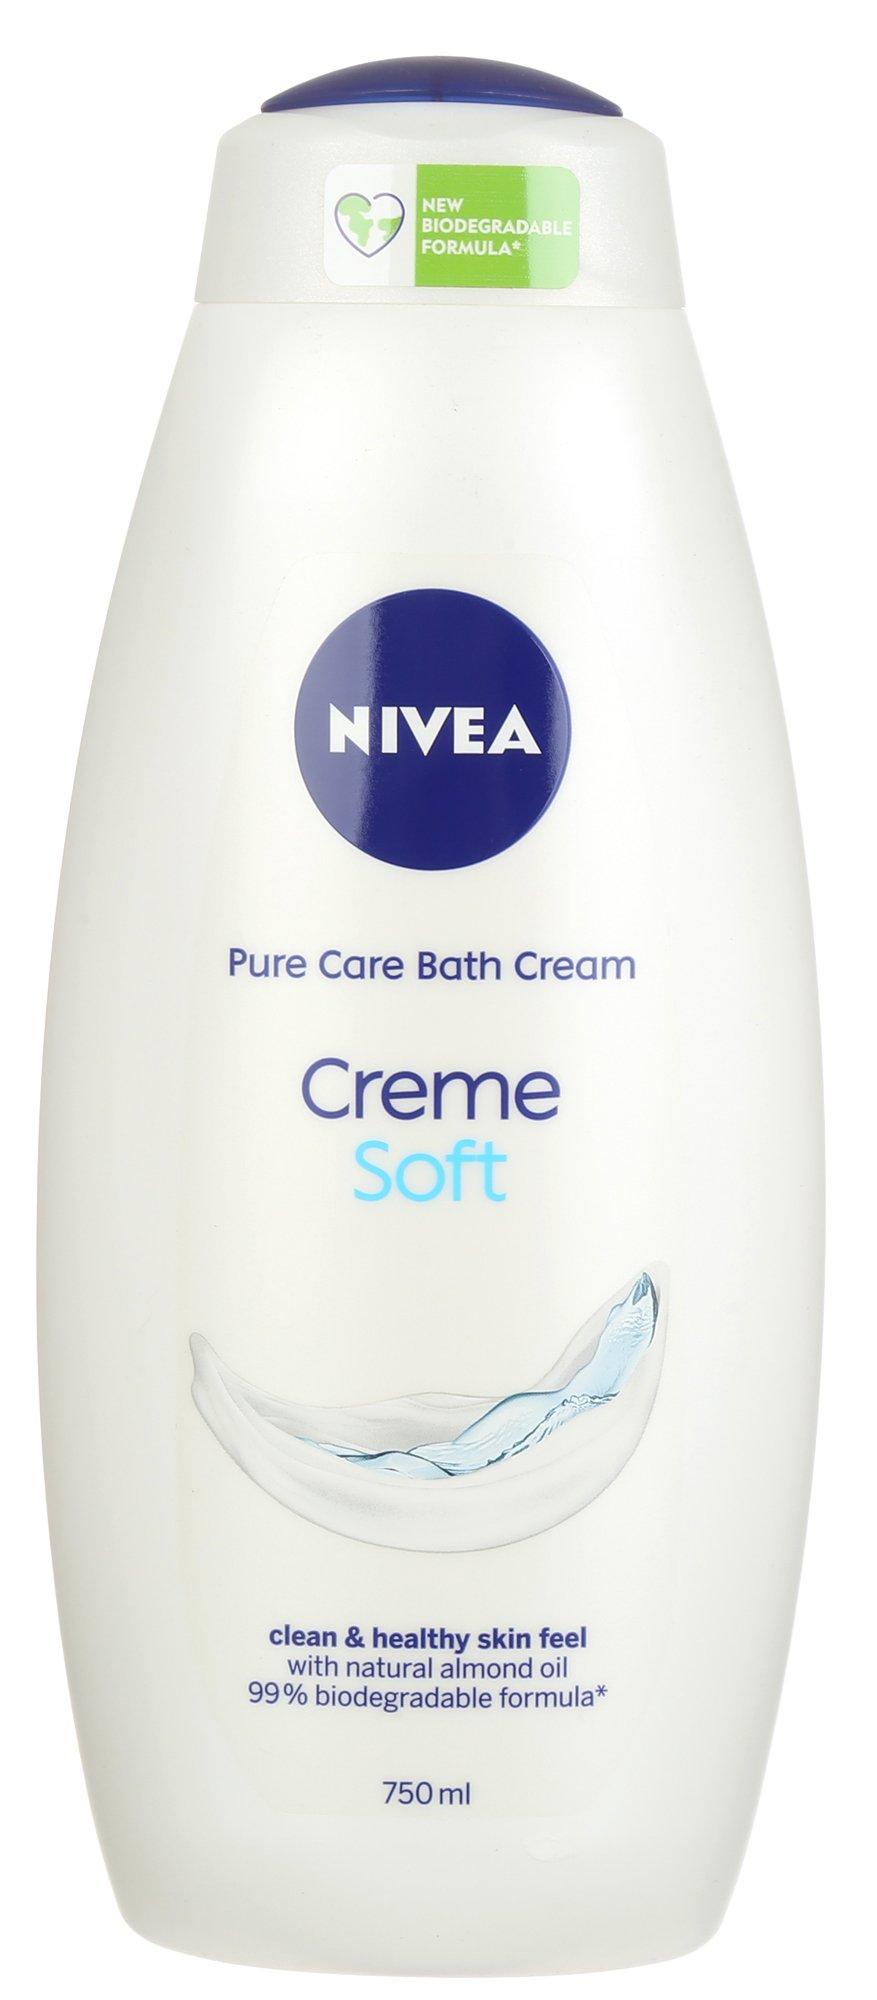 25 oz. Pure Care Bath Cream